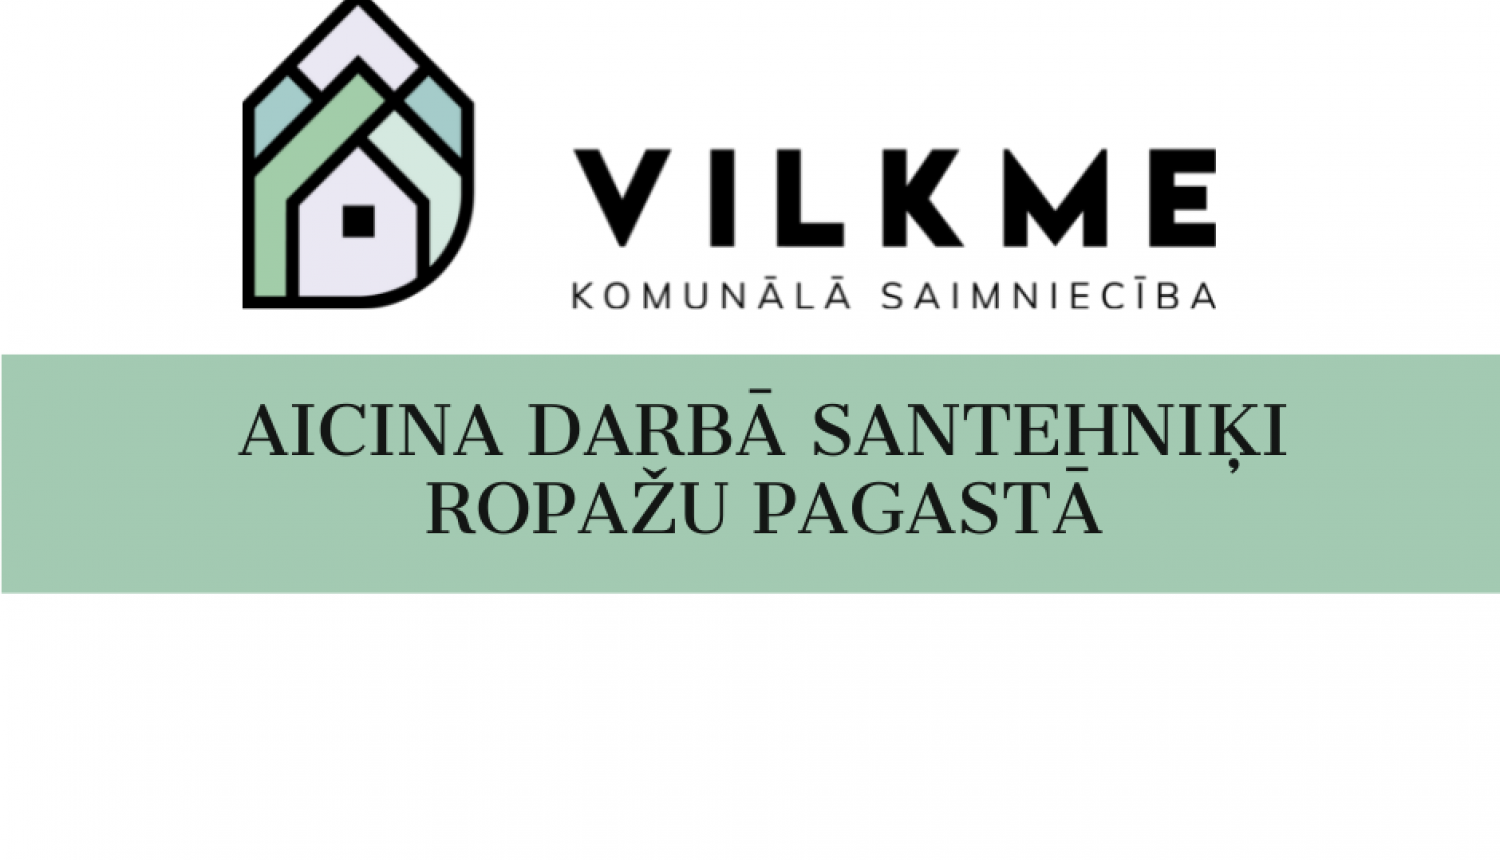 vilkme_vakance